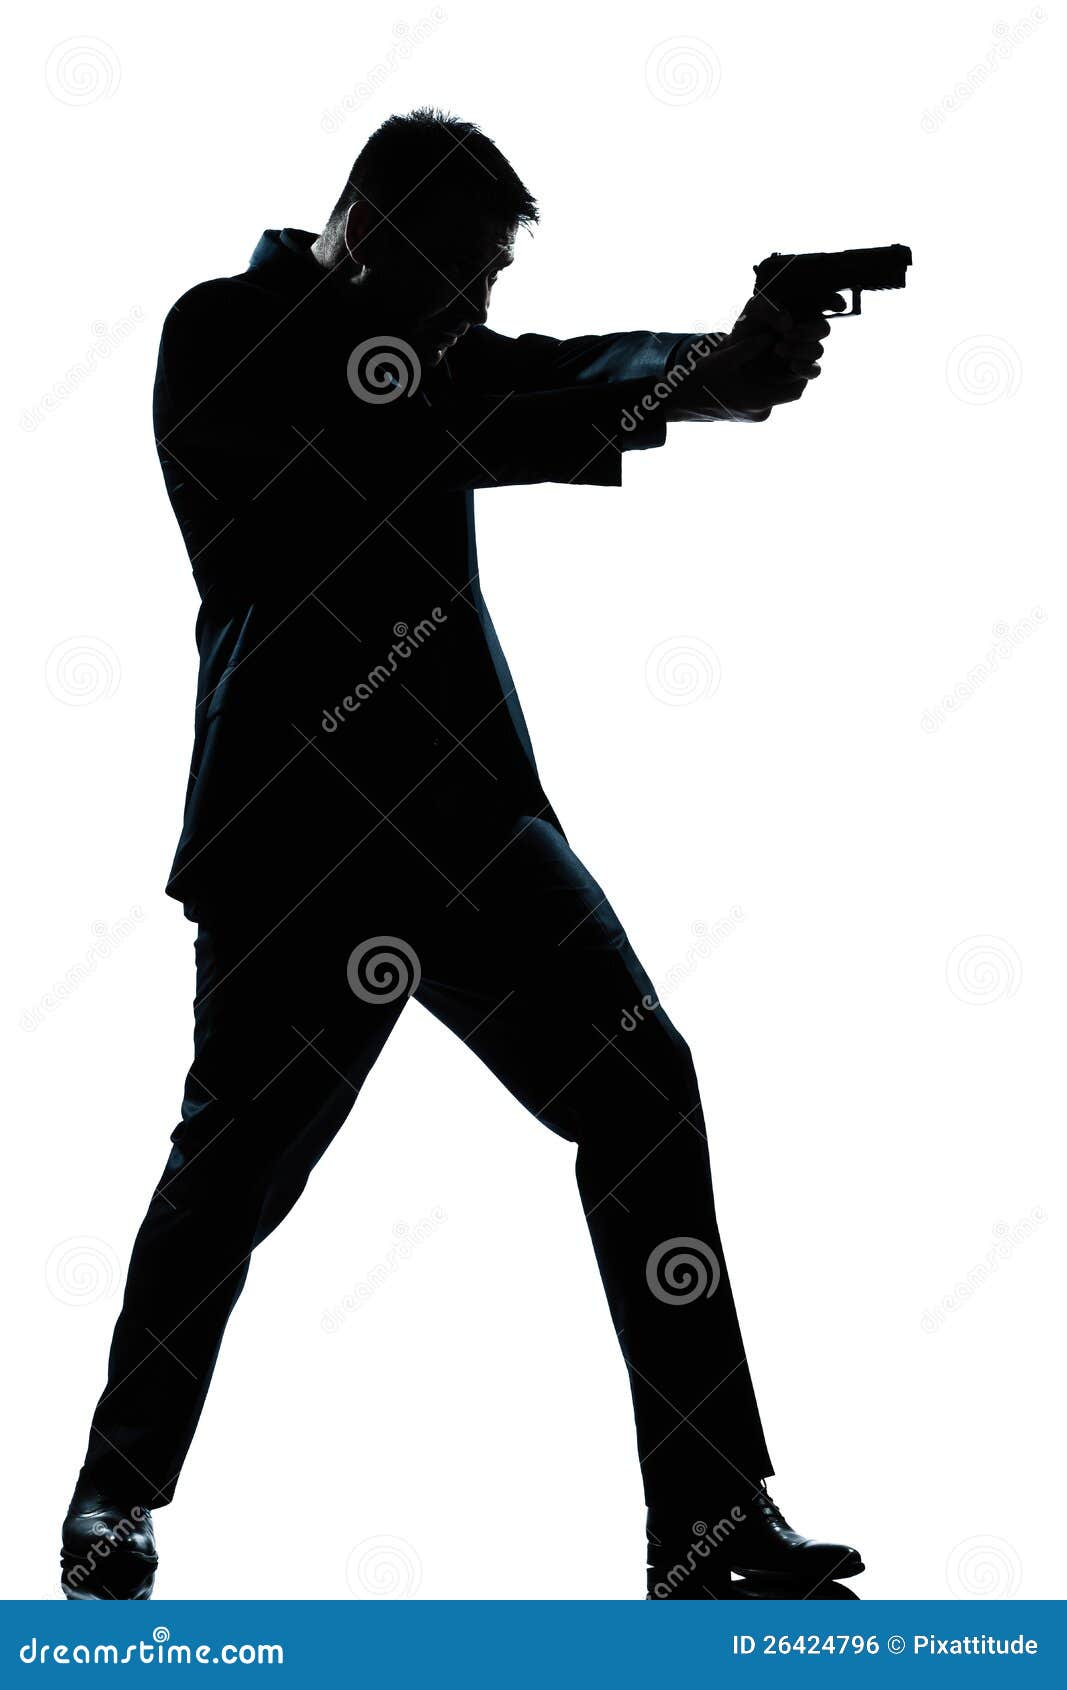 clipart man with gun - photo #10